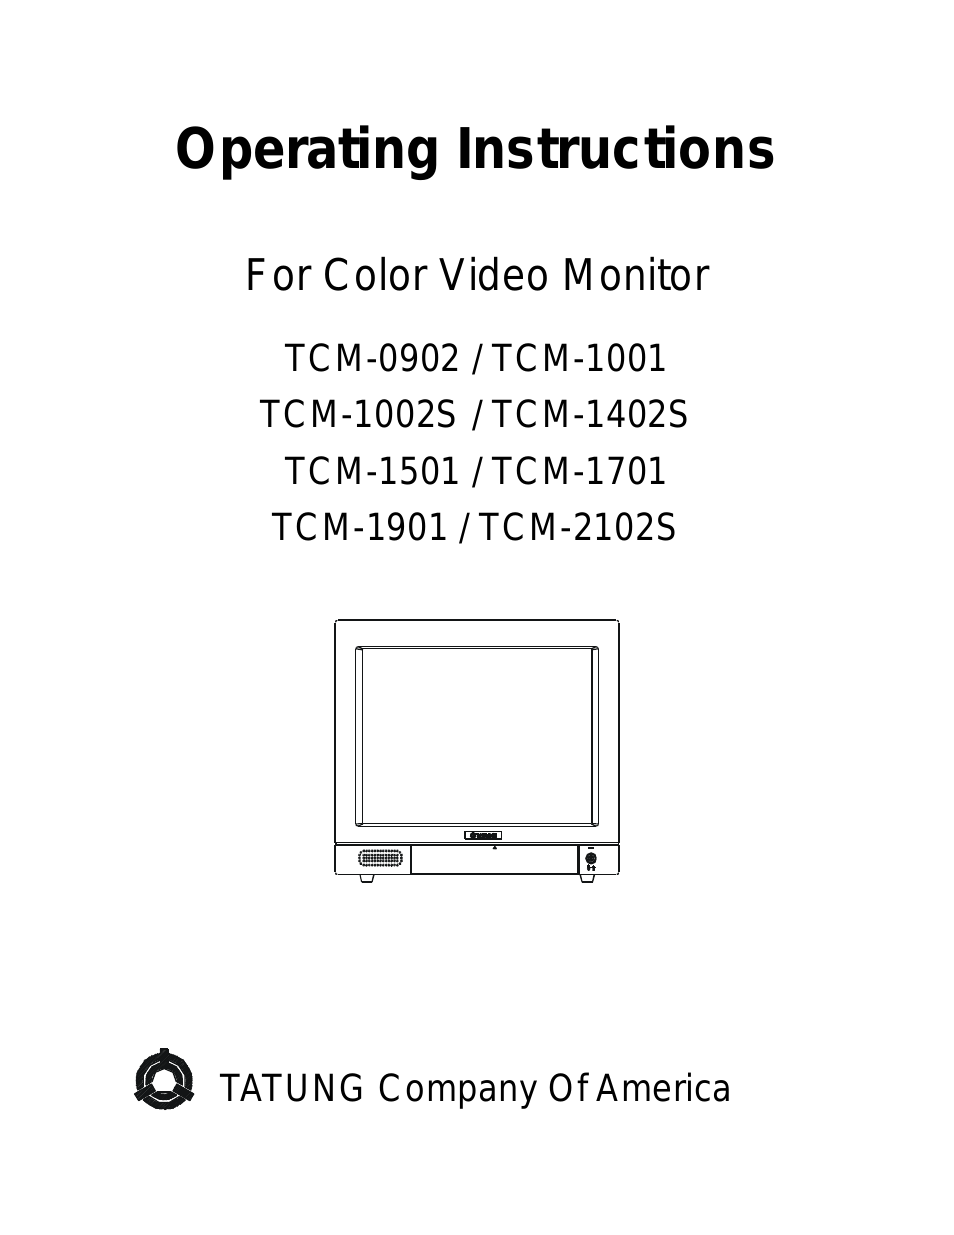 TCM-1001